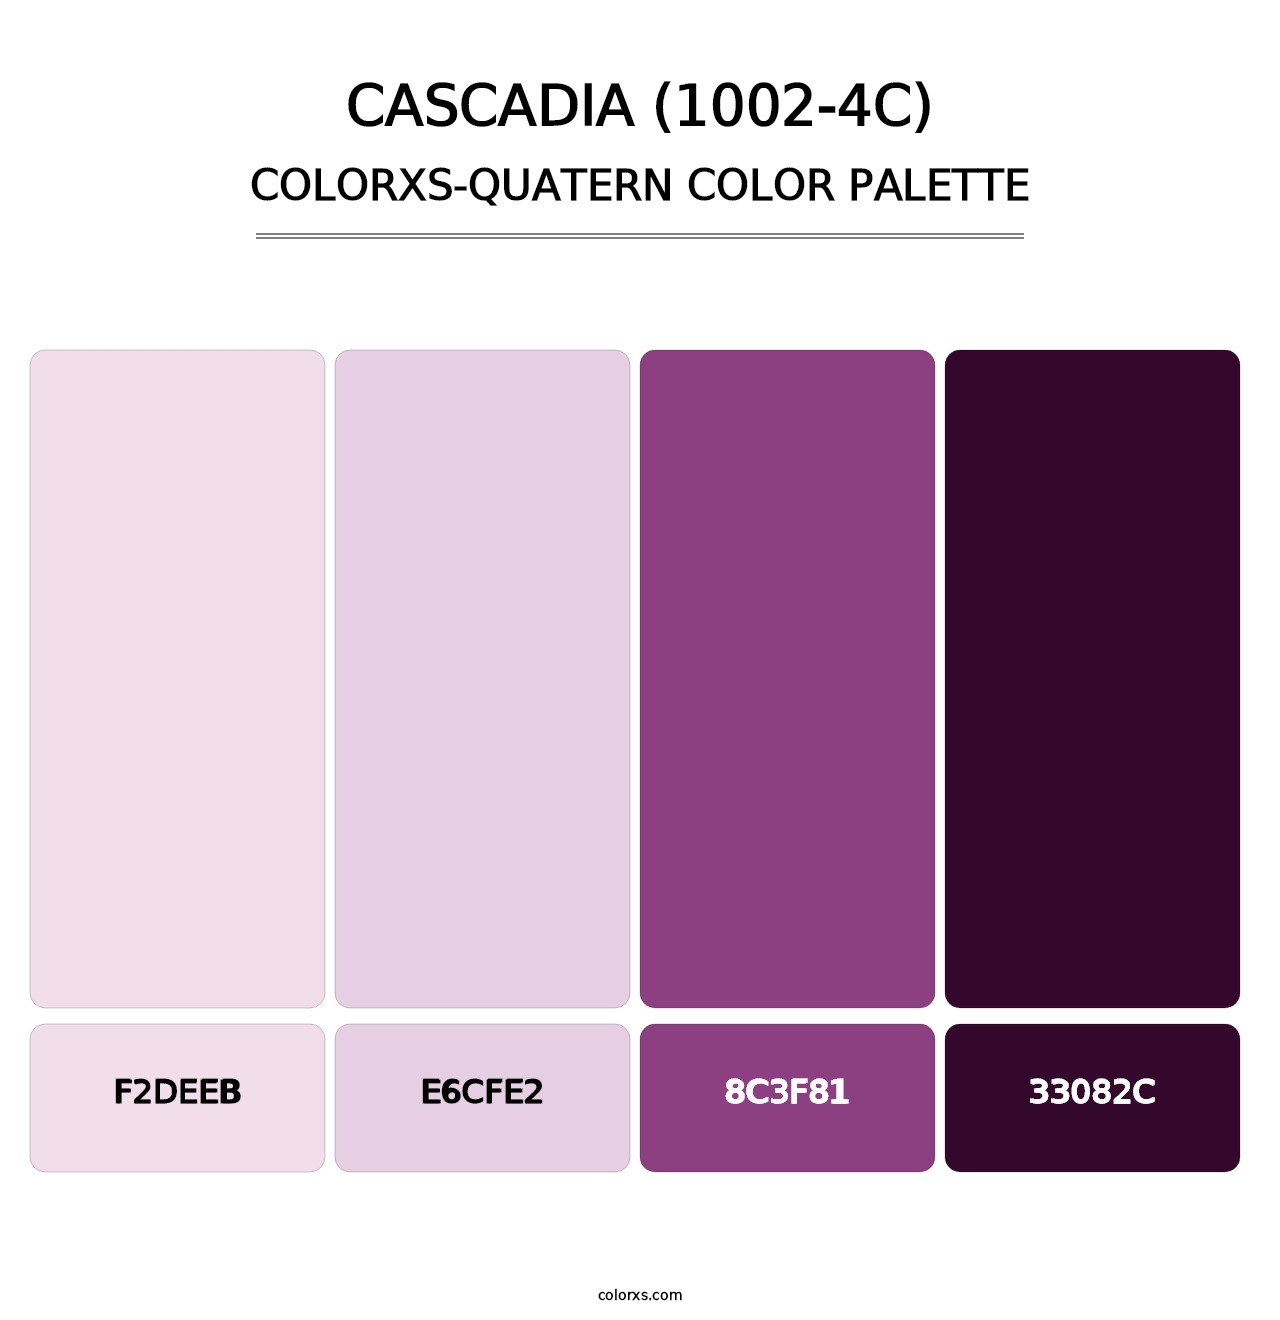 Cascadia (1002-4C) - Colorxs Quatern Palette